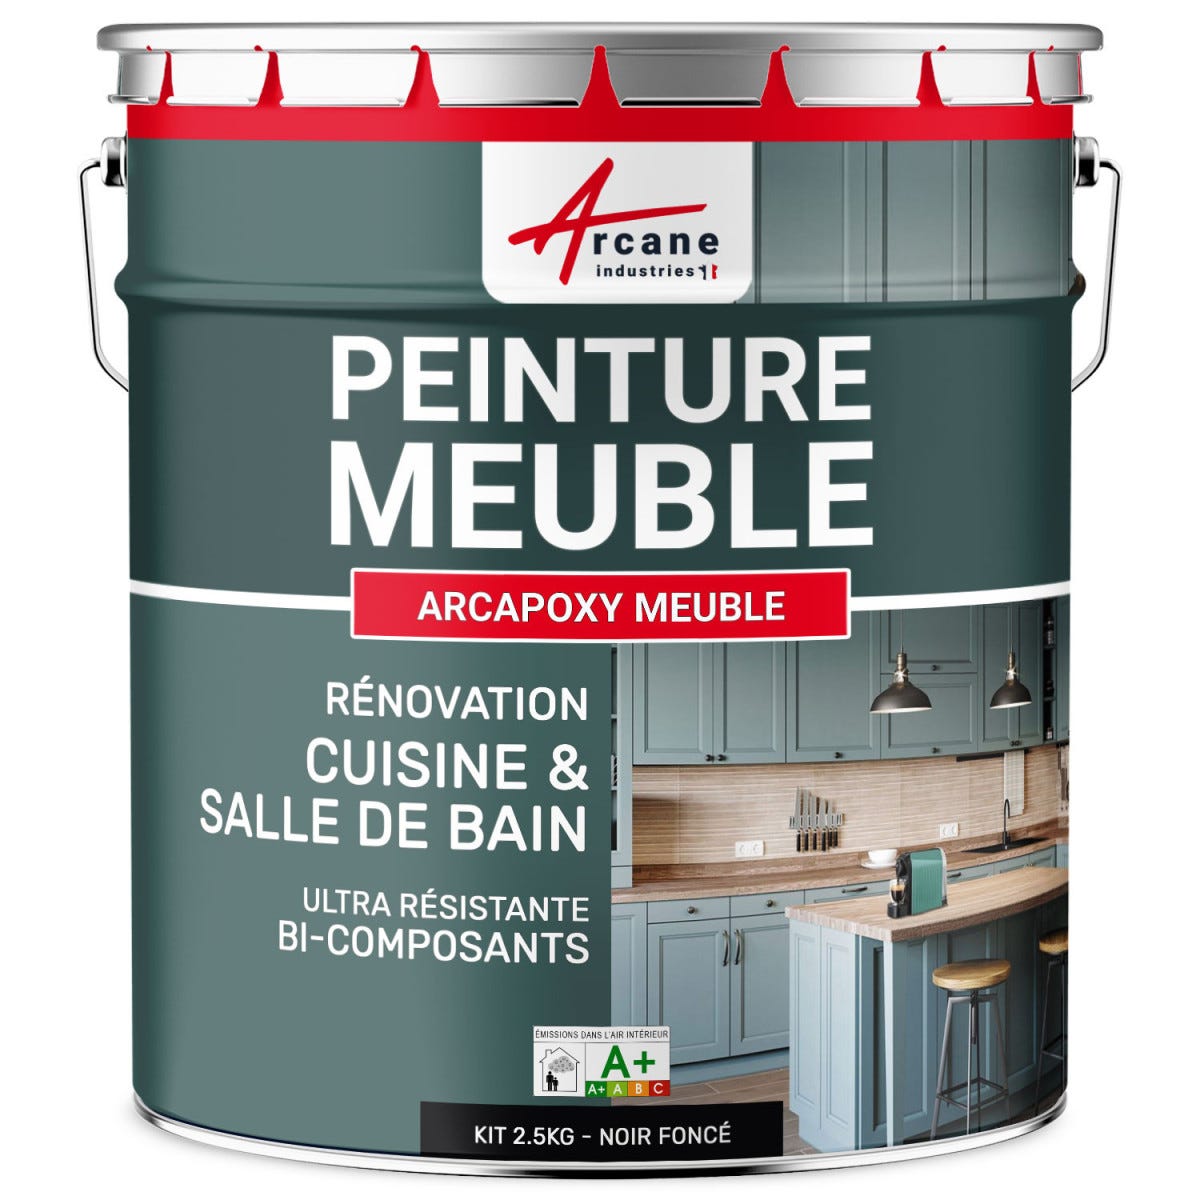 Peinture Meuble Cuisine, Salle de Bain - ARCAPOXY MEUBLE - 2.5 kg (jusqu'à 30 m² en 2 couches) - Noir foncé - RAL 9005 - ARCANE INDUSTRIES 0